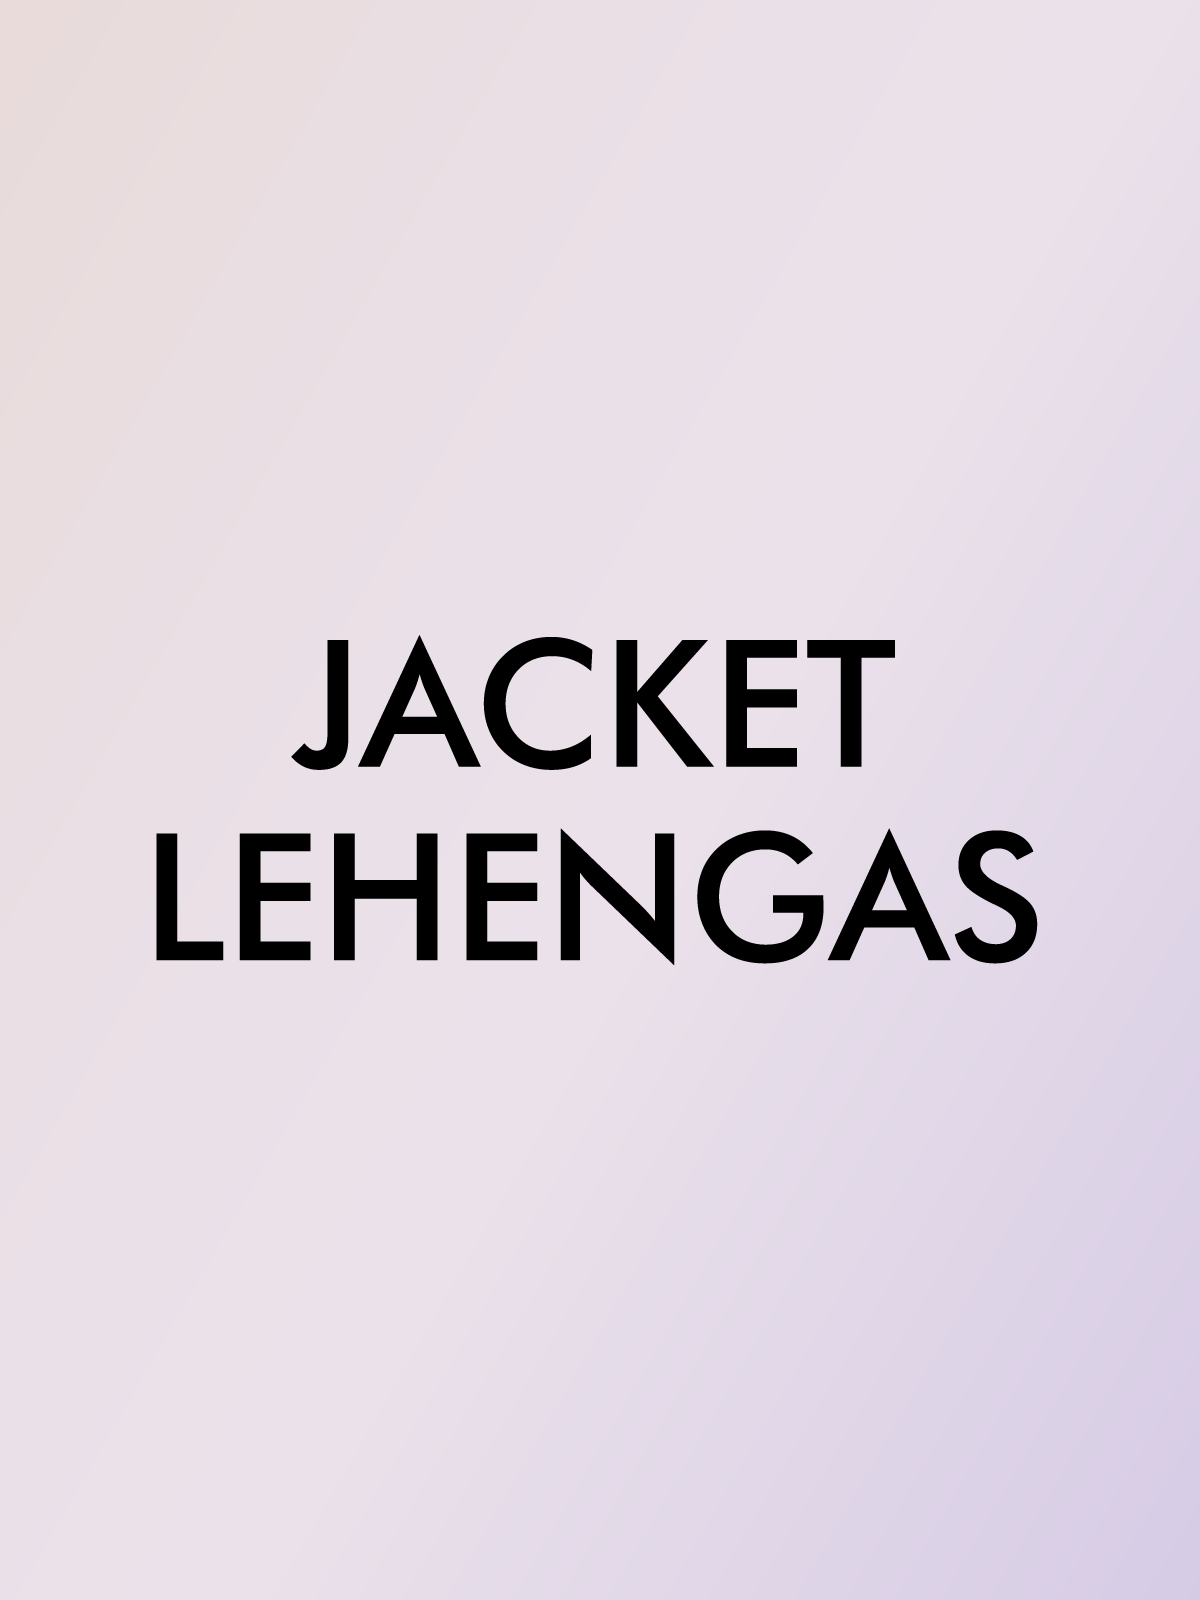 JACKET LEHENGAS